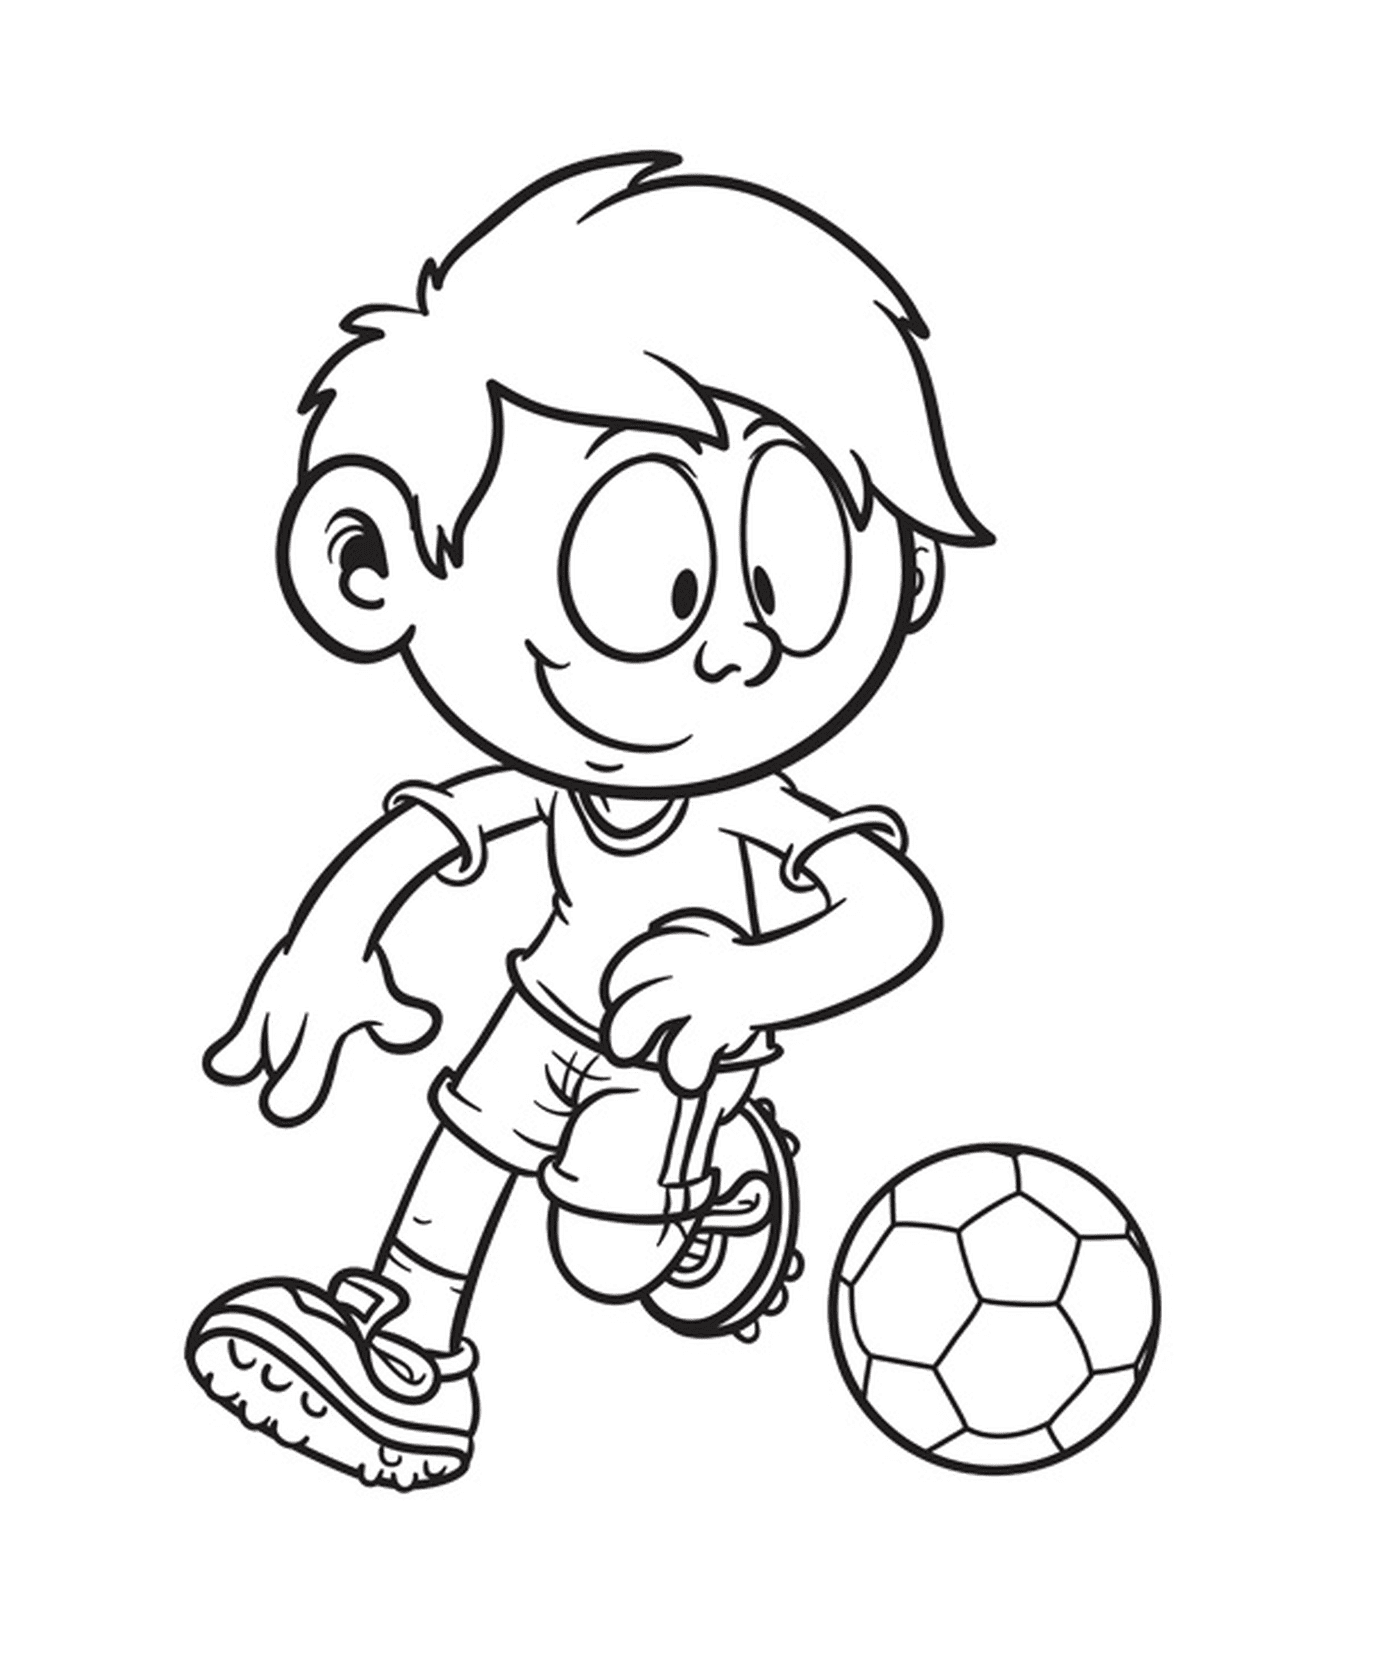  Niño de diez años jugando al fútbol 